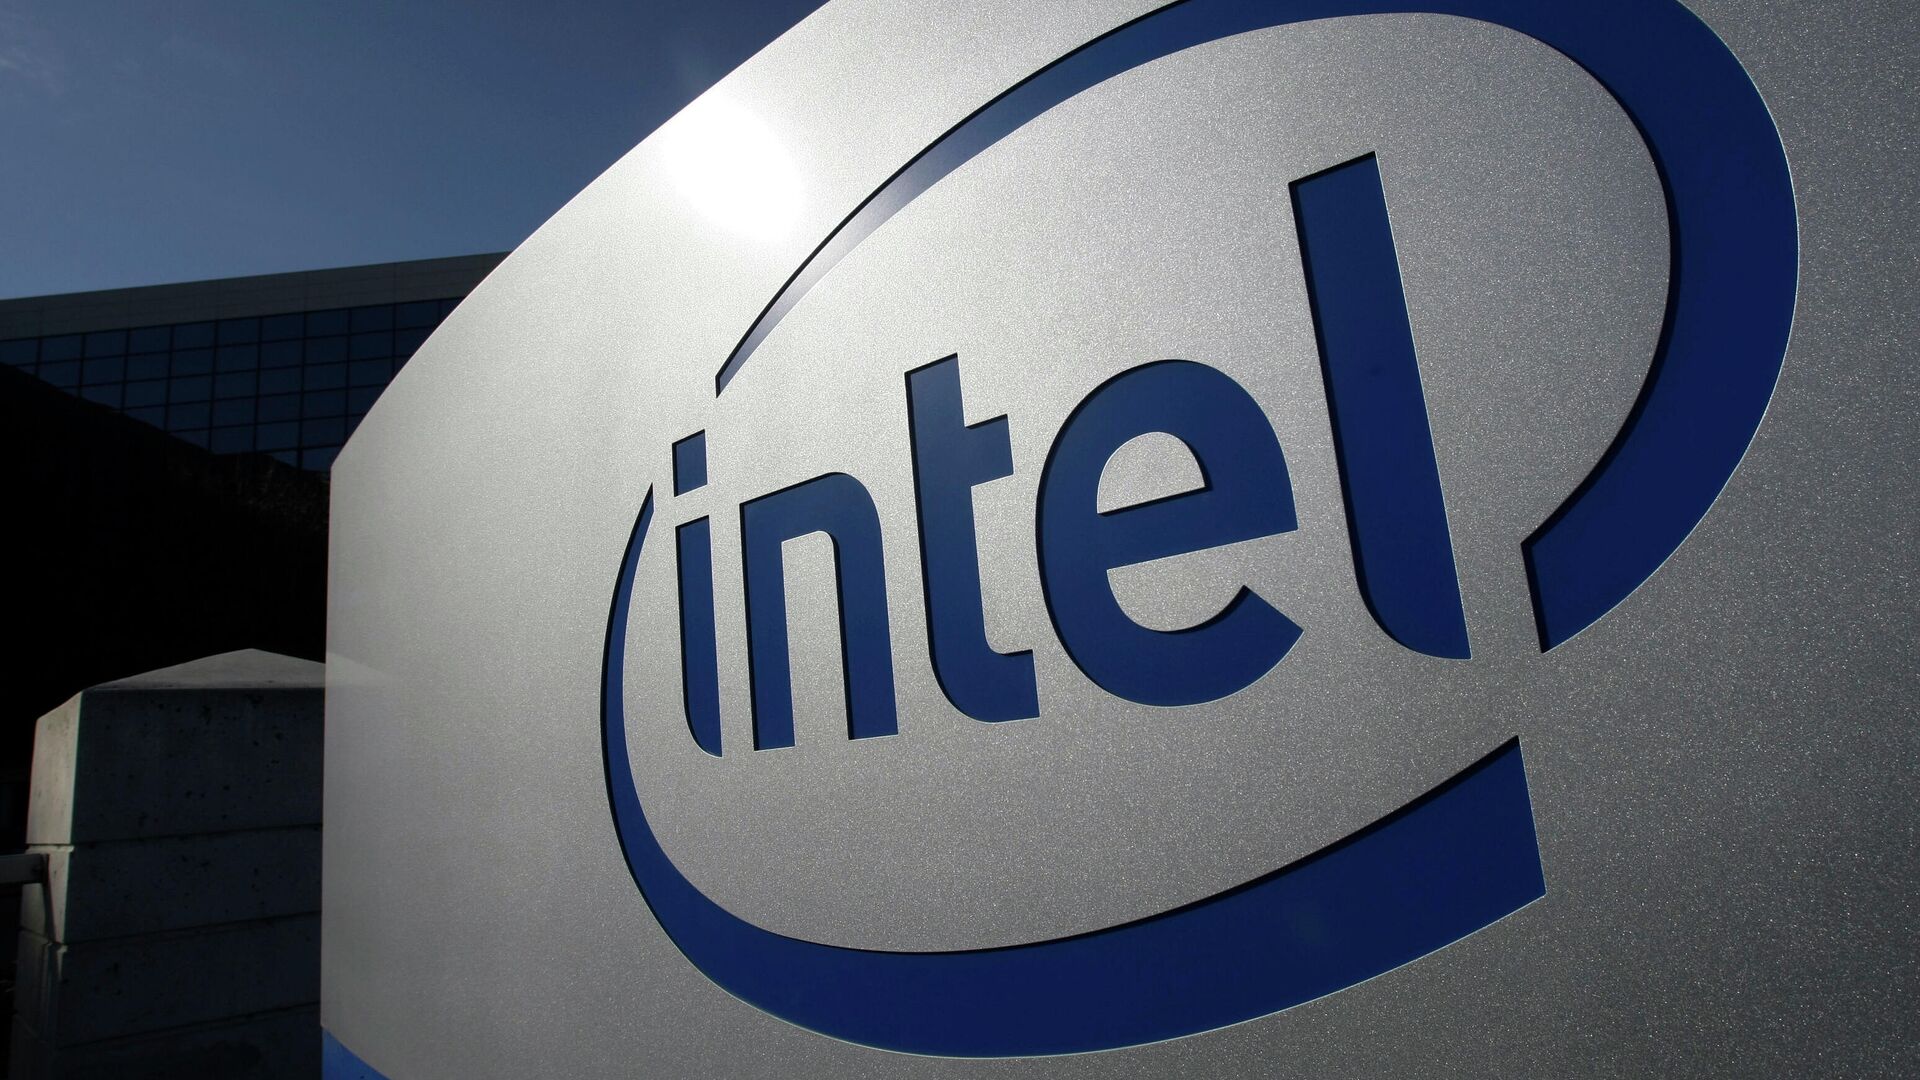 Новый процессор Intel Core i5 для ноутбуков рассекречен до премьеры